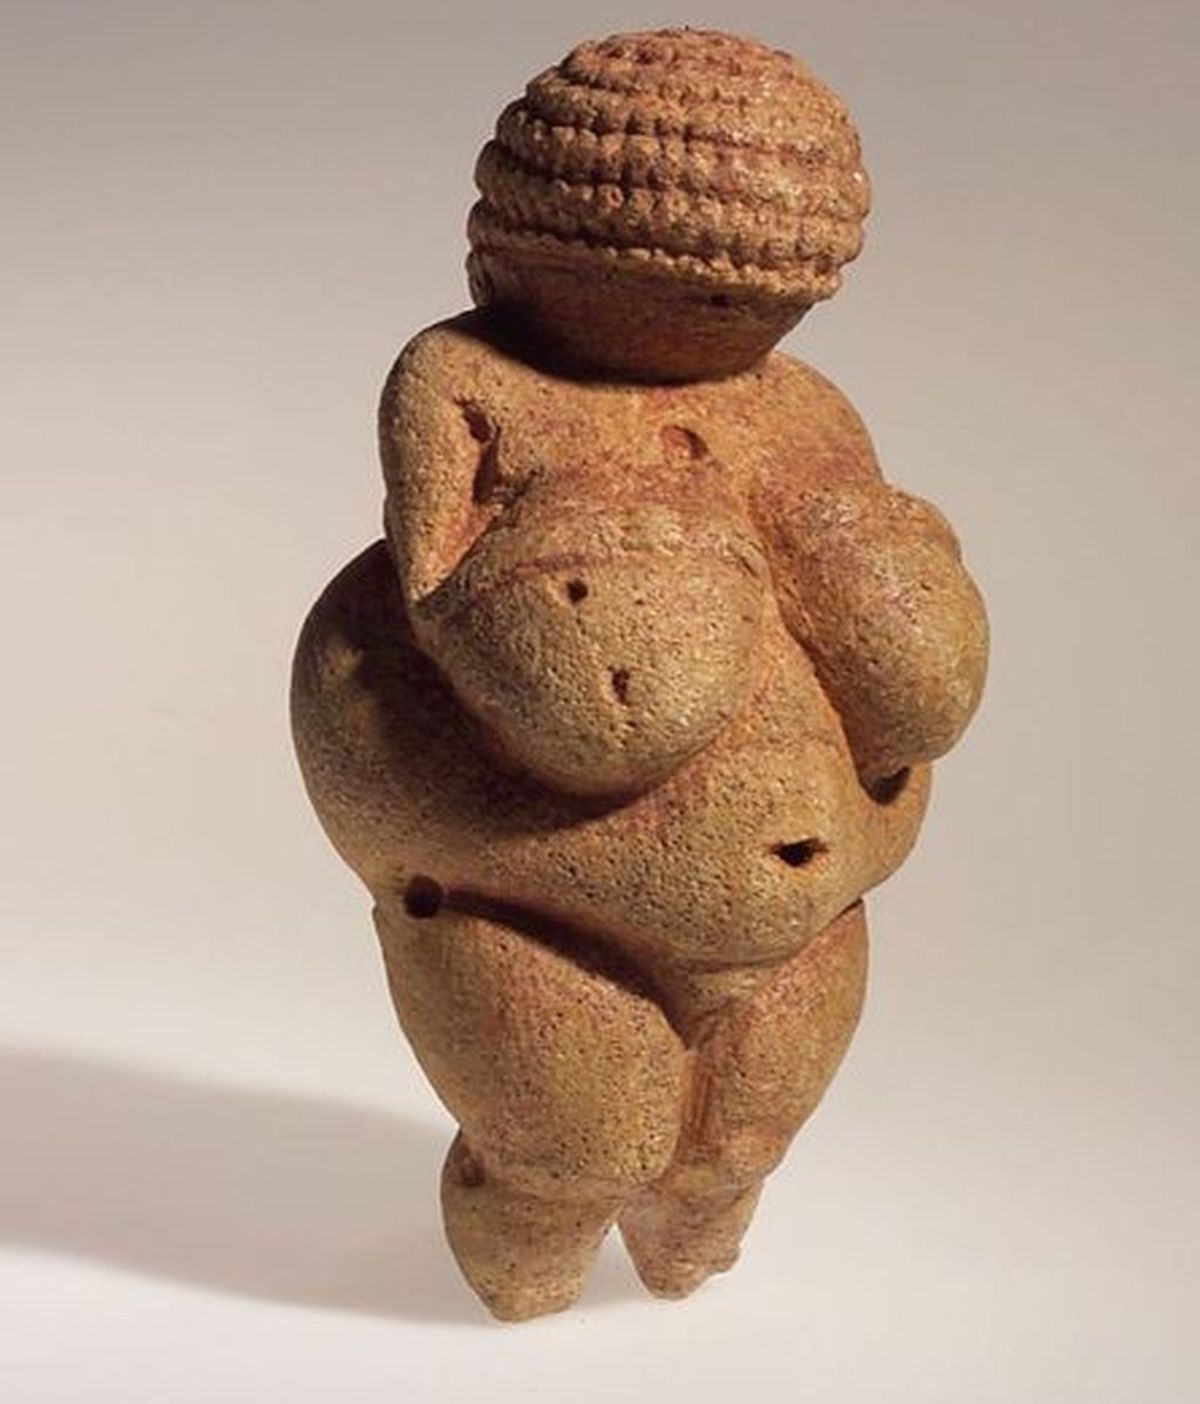 Facebook censura a una escultura de la Edad de Piedra por "pornográfica"